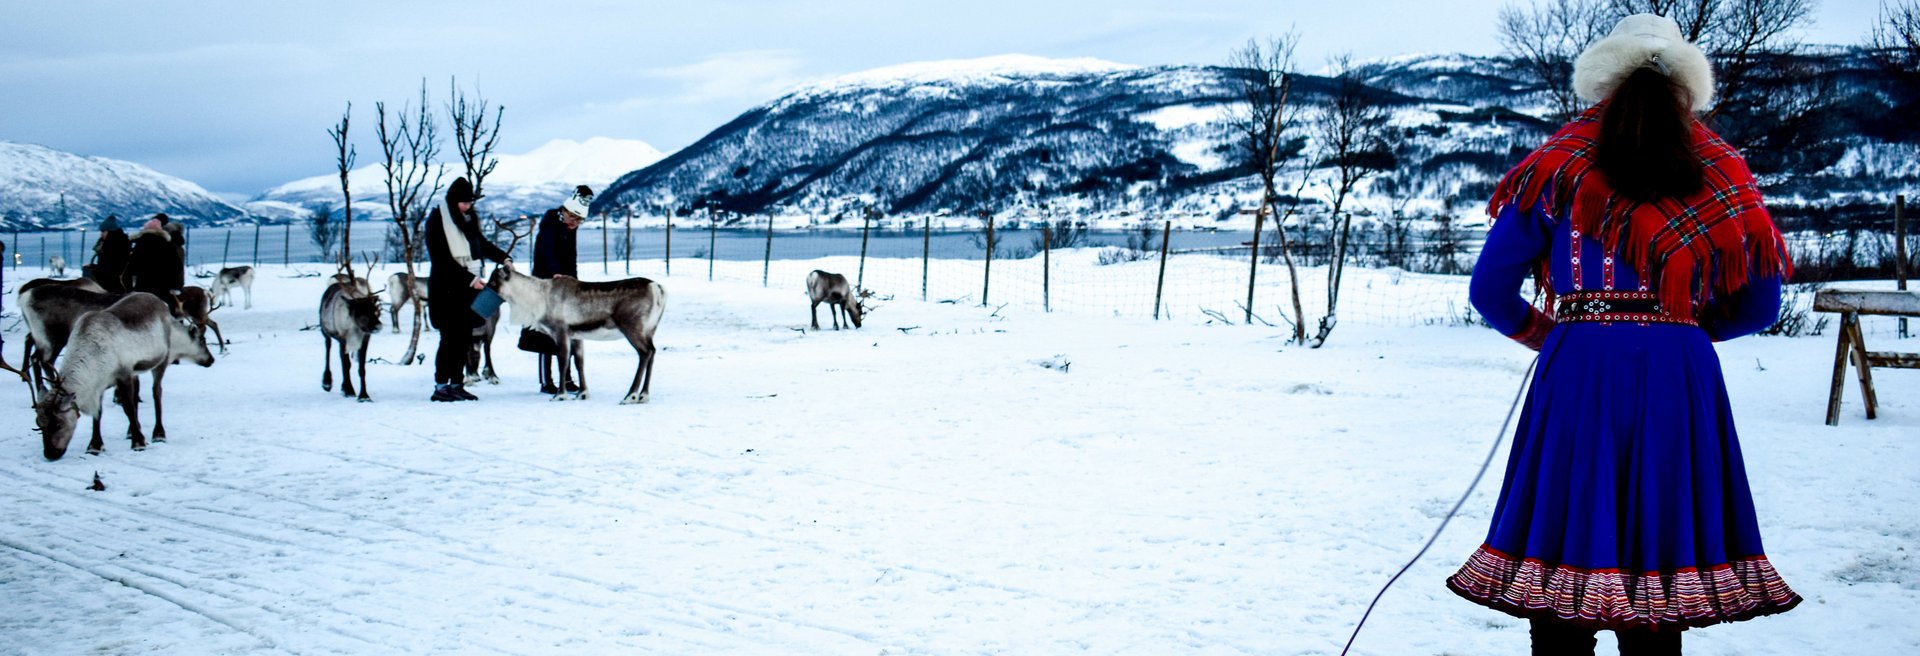 Sami mit Rentieren in verschneiter Landschaft